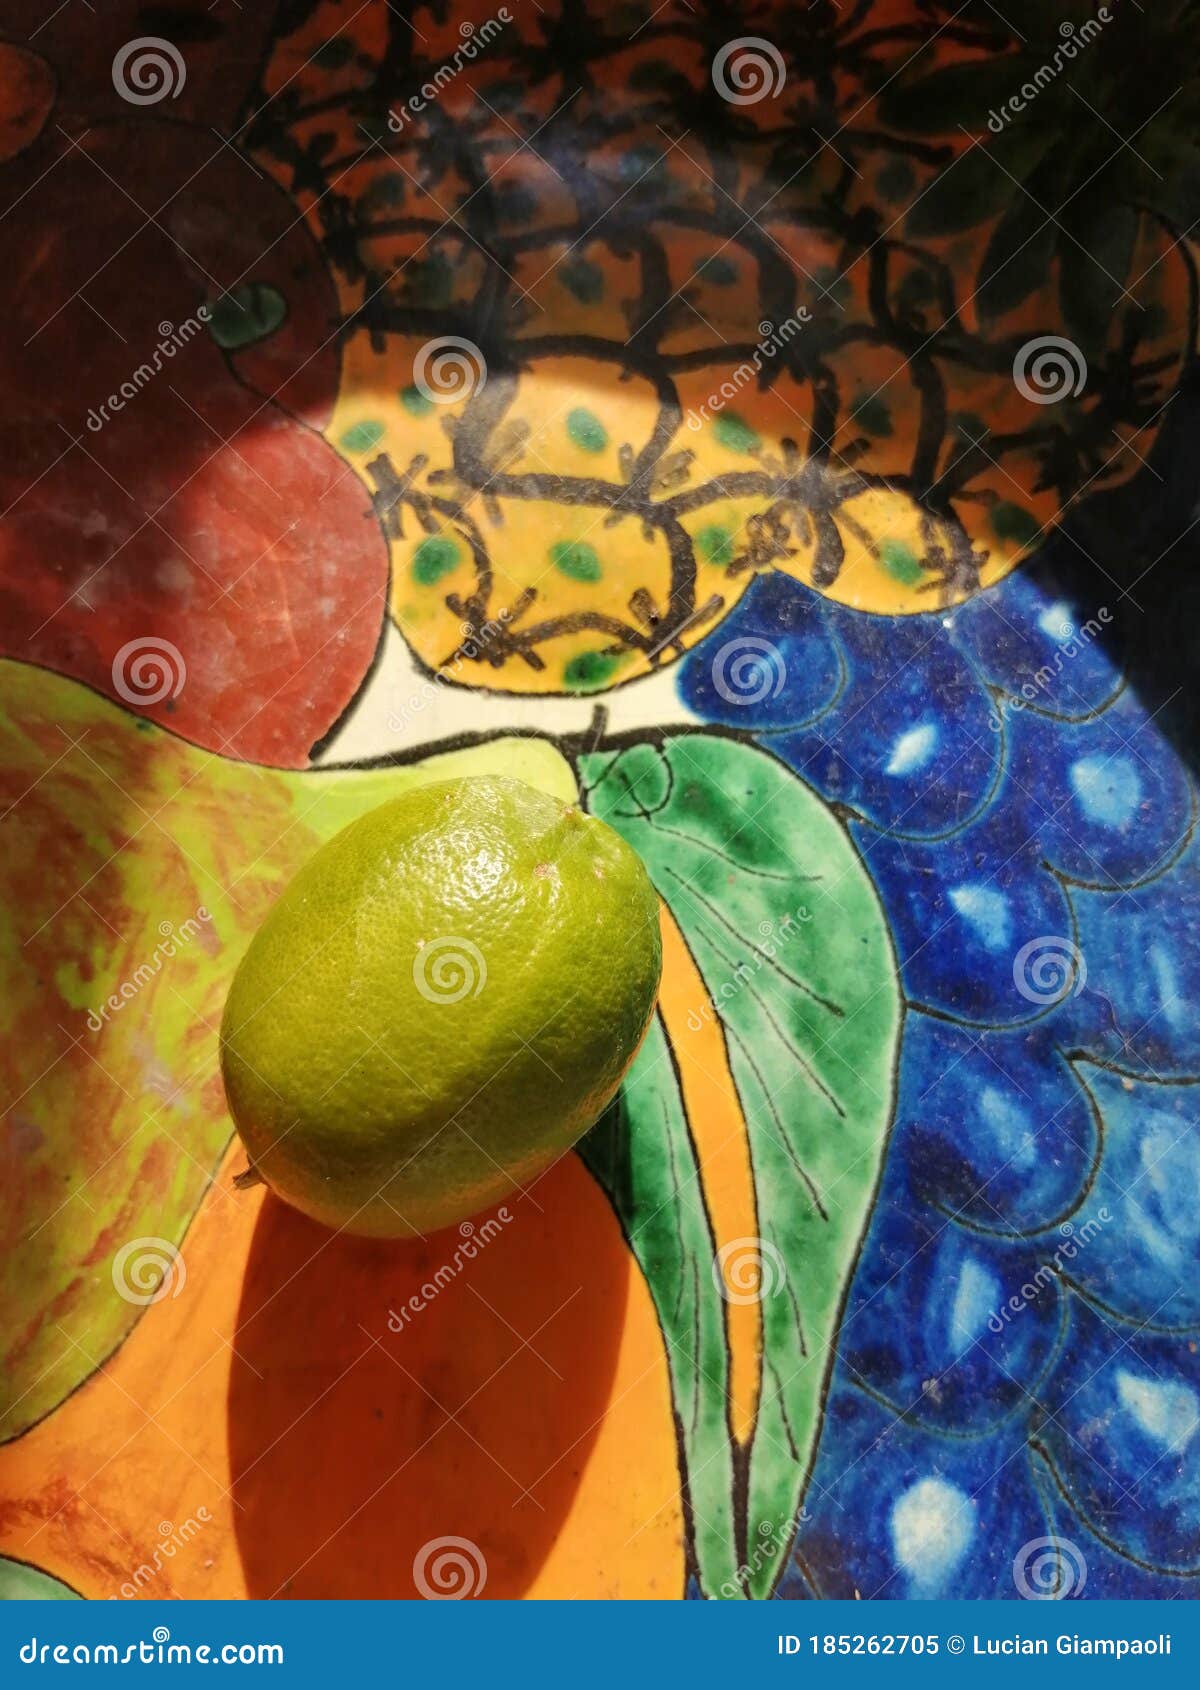 lemon sitting on artesanal vase with the sun hitting directly